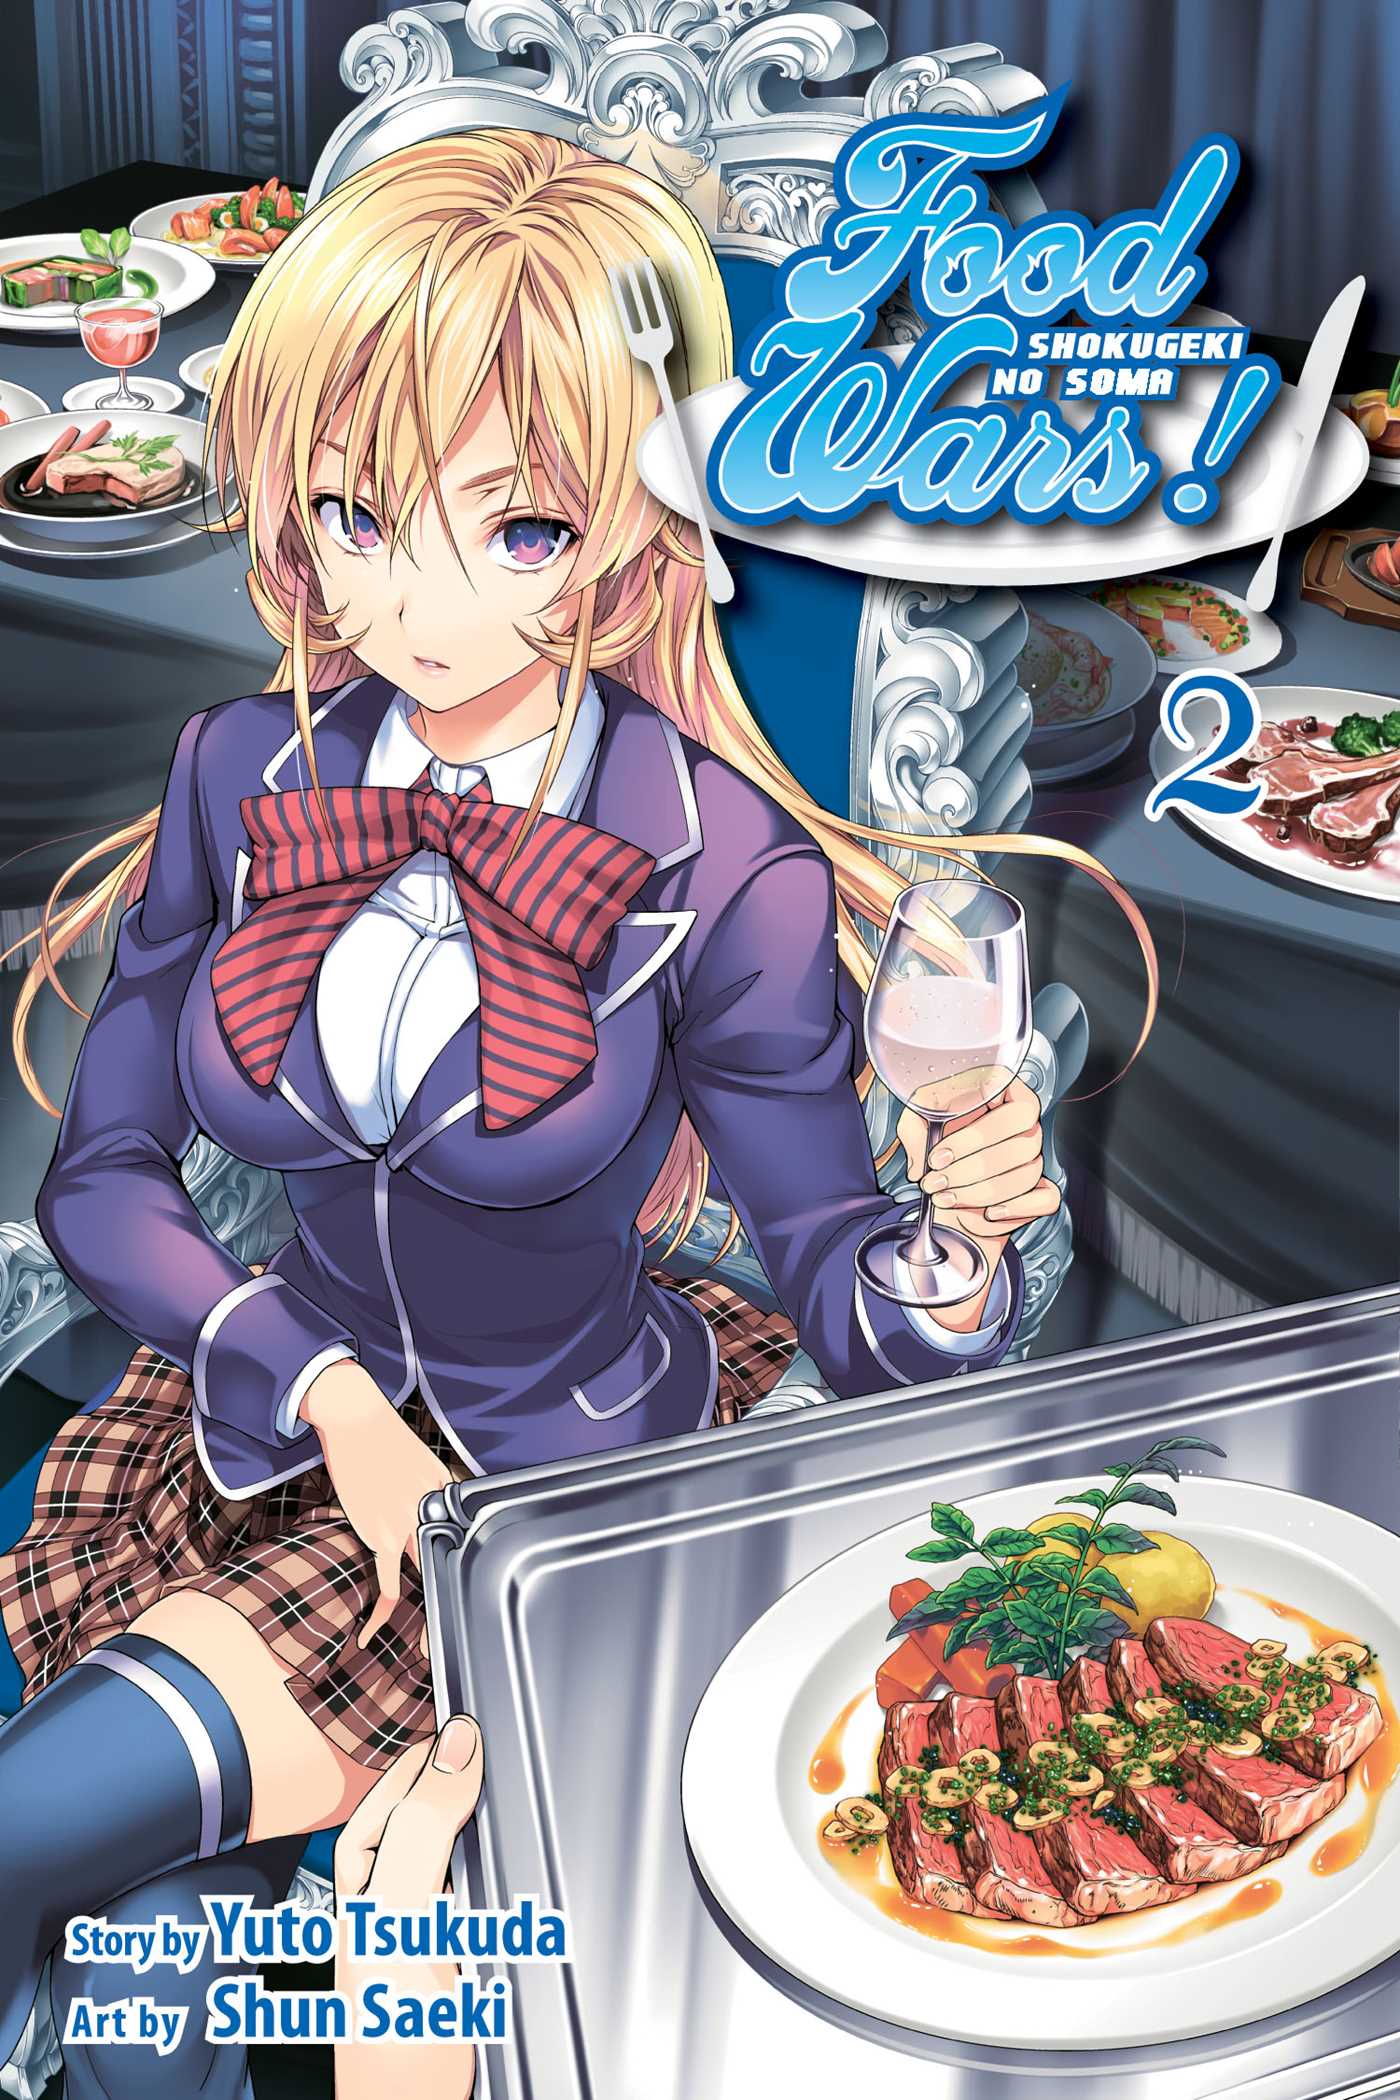 Food Wars!: Shokugeki no Soma Vol. 2 | Tsukuda, Yuto (Auteur) | Saeki, Shun (Illustrateur)